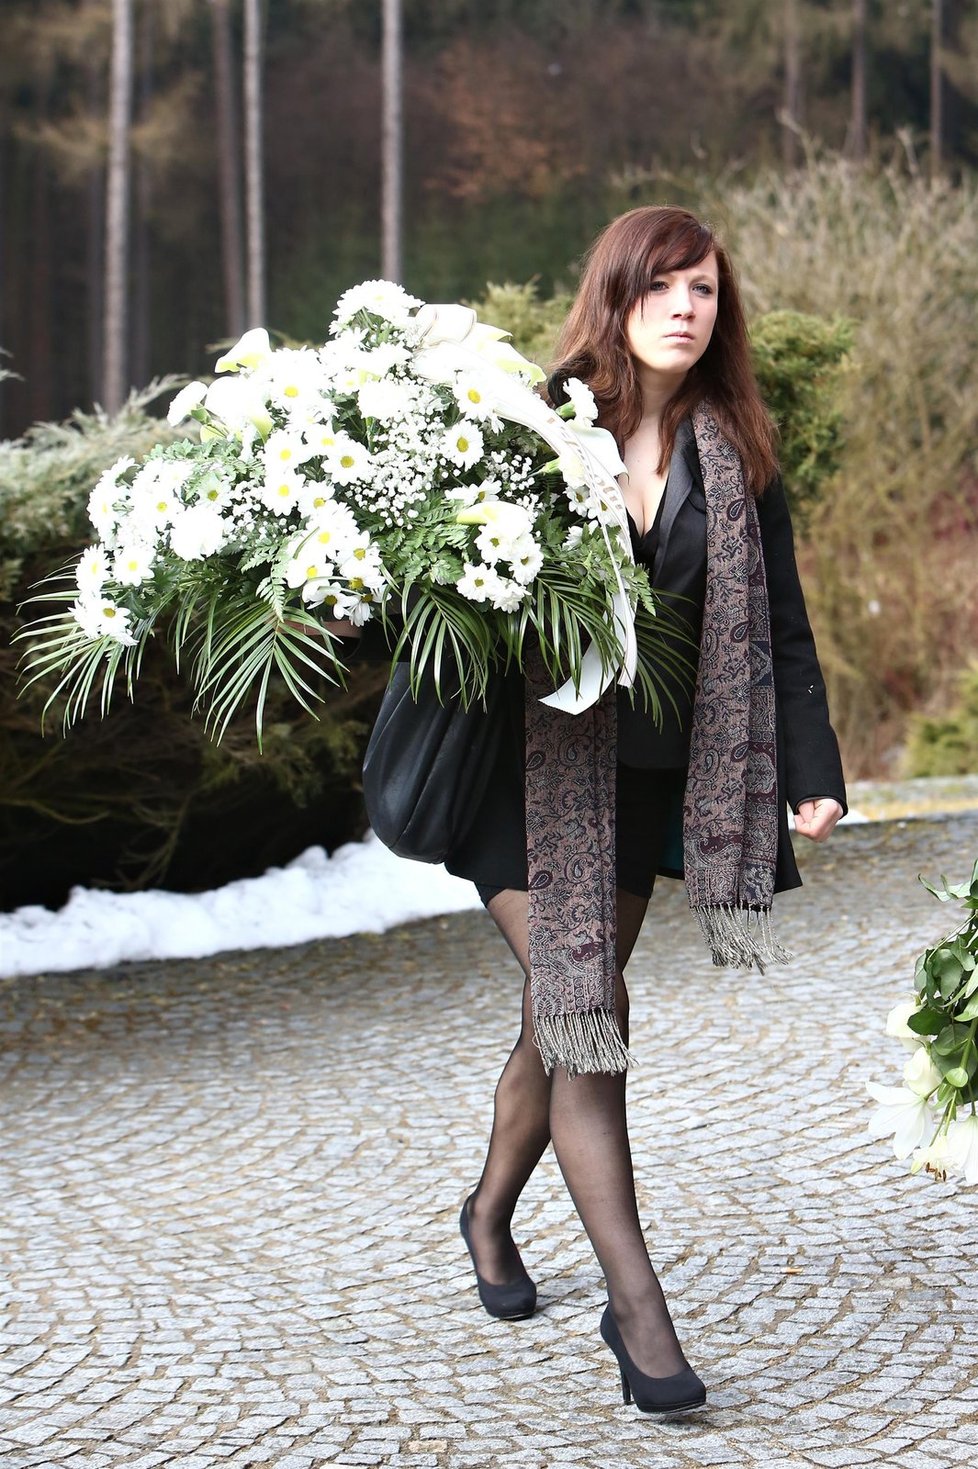 Rodina a kamarádi Petry přinesli na pohřeb řadu bílých květin